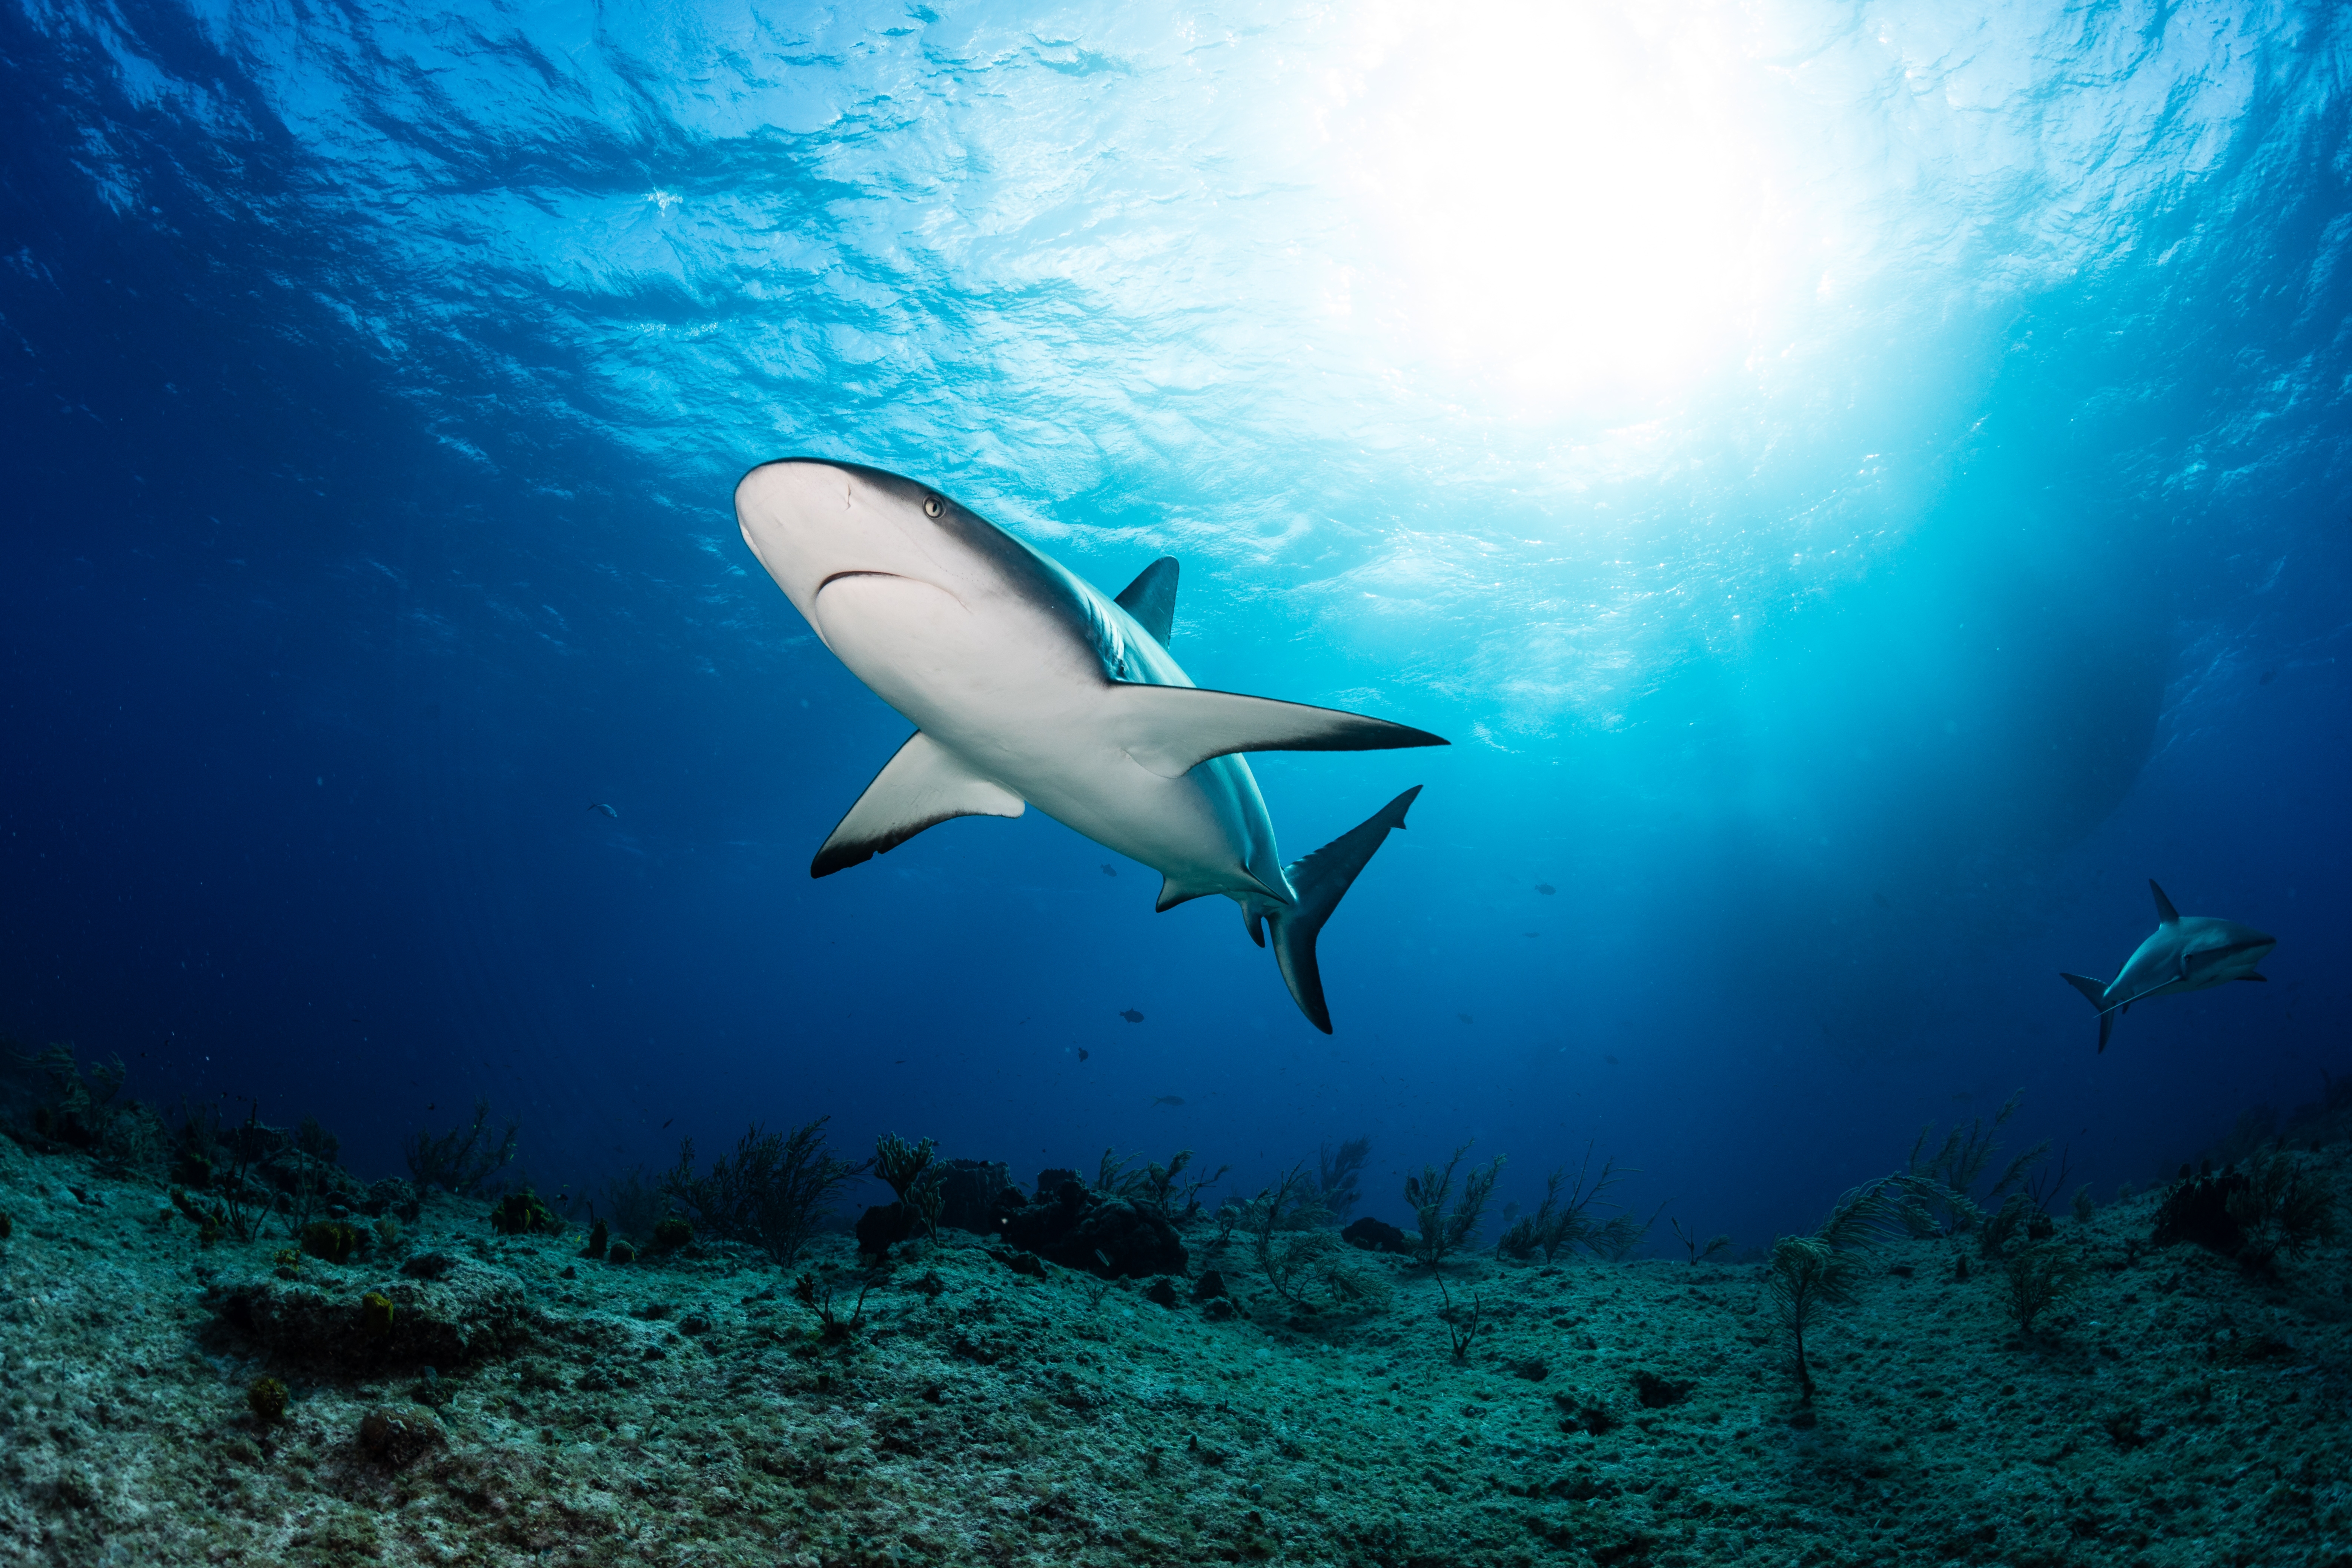     Une touriste américaine tuée par un requin au Bahamas

